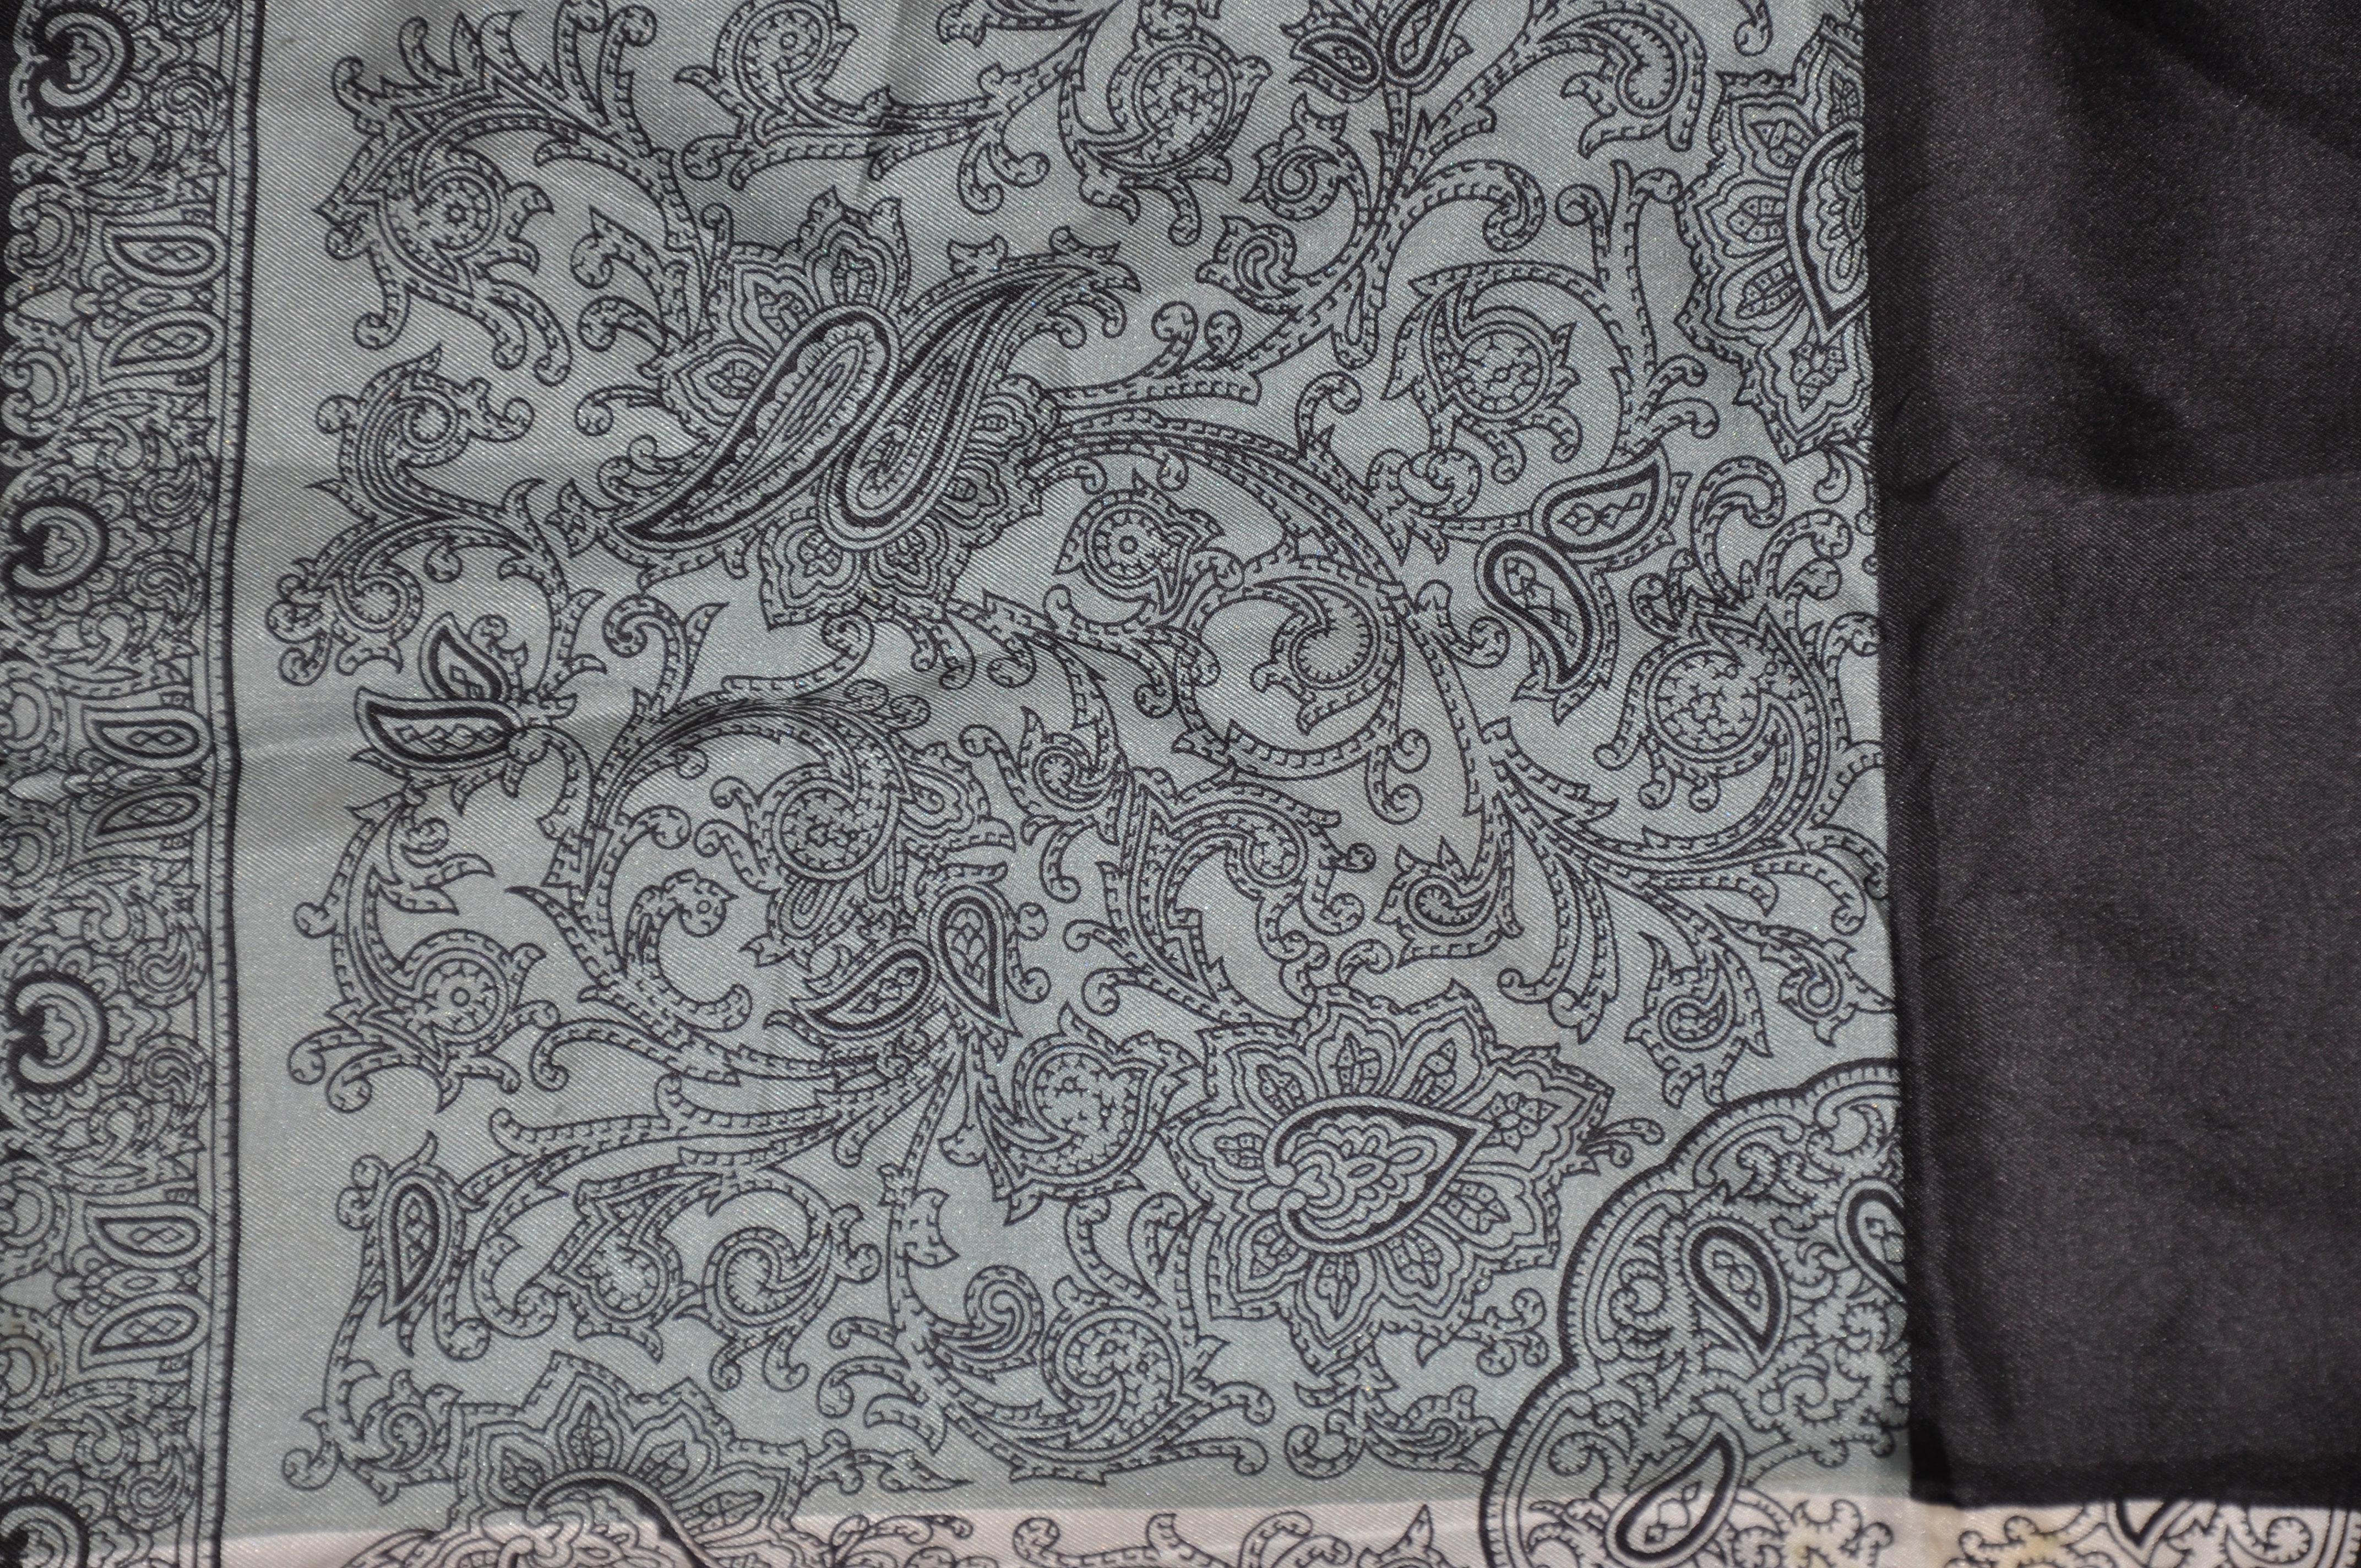        Dumont elegante schwarze Grenze rund um Elfenbein, grau und Stahl palsey Seidentaschentuch mit handgerollten Kanten akzentuiert, misst 16 Zoll von 16 Zoll. Hergestellt in Italien.